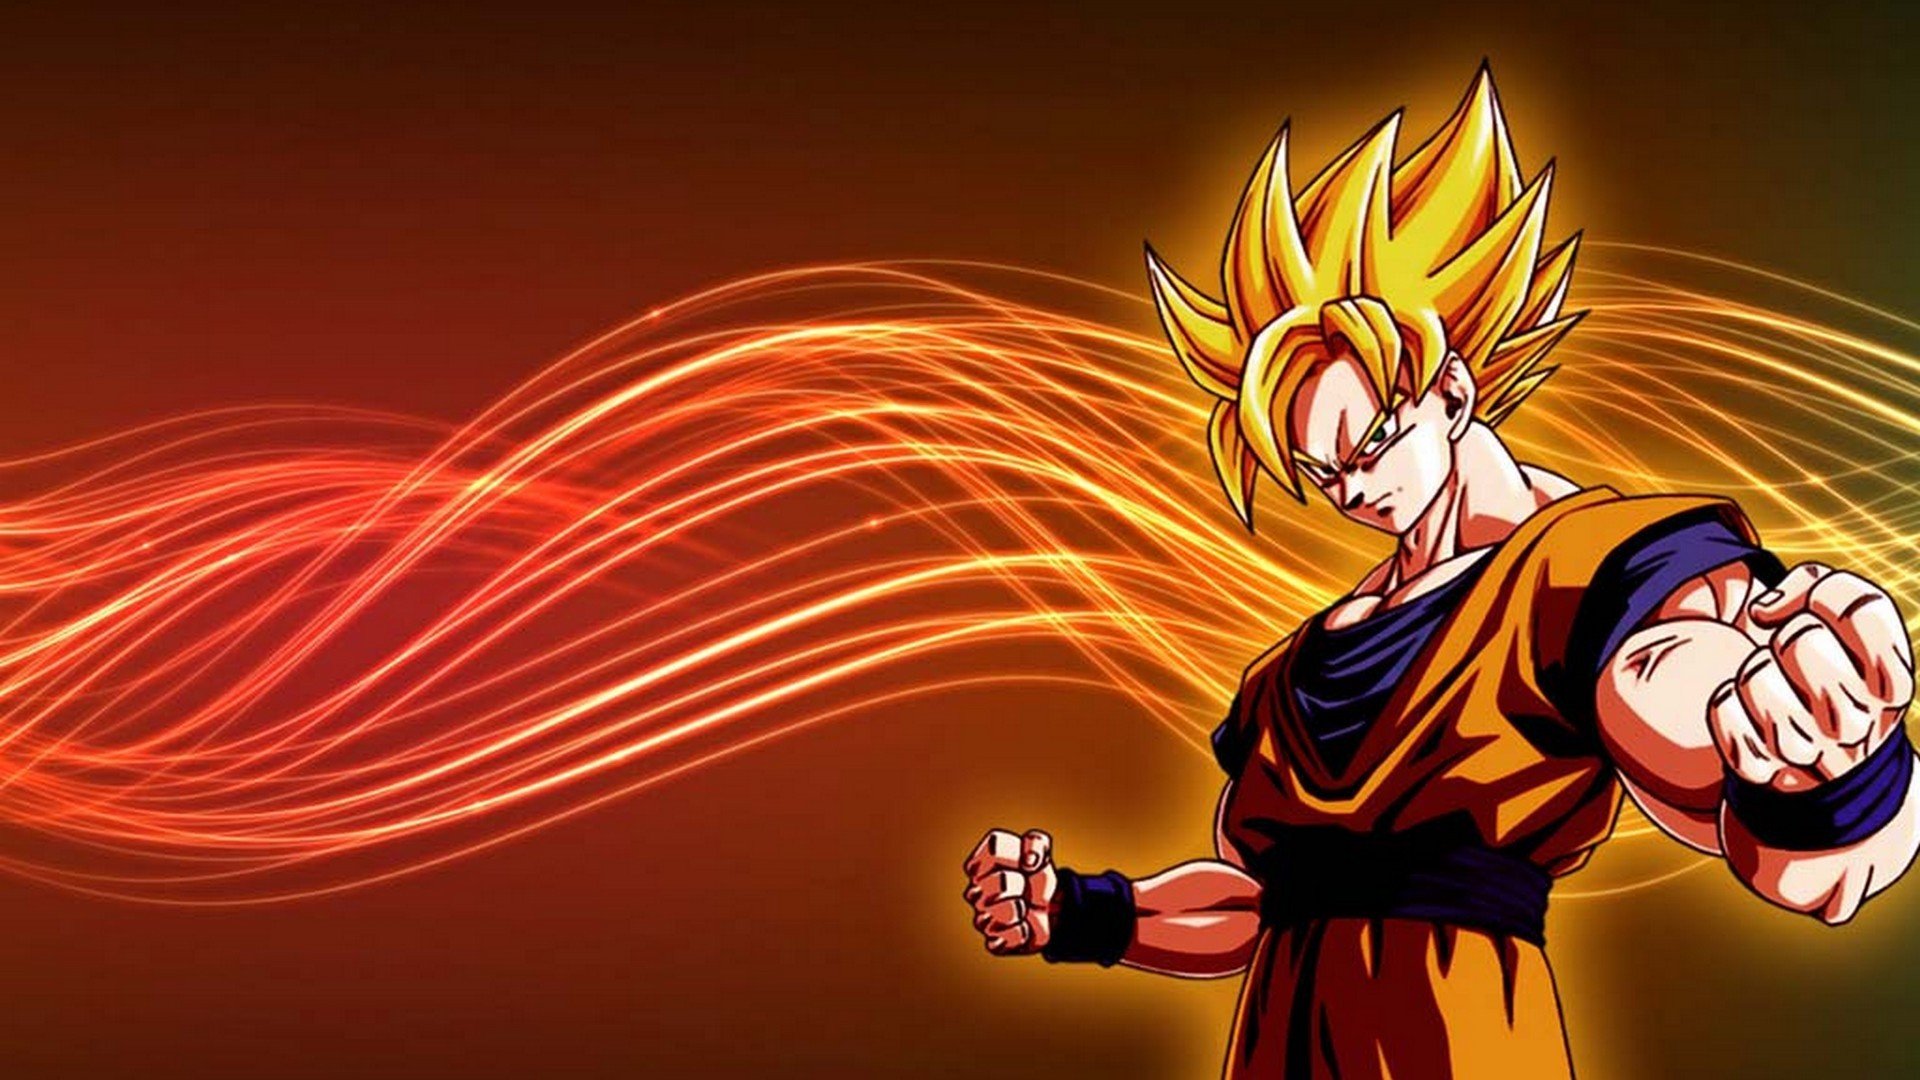 Goku Super Saiyan Desktop Backgrounds.